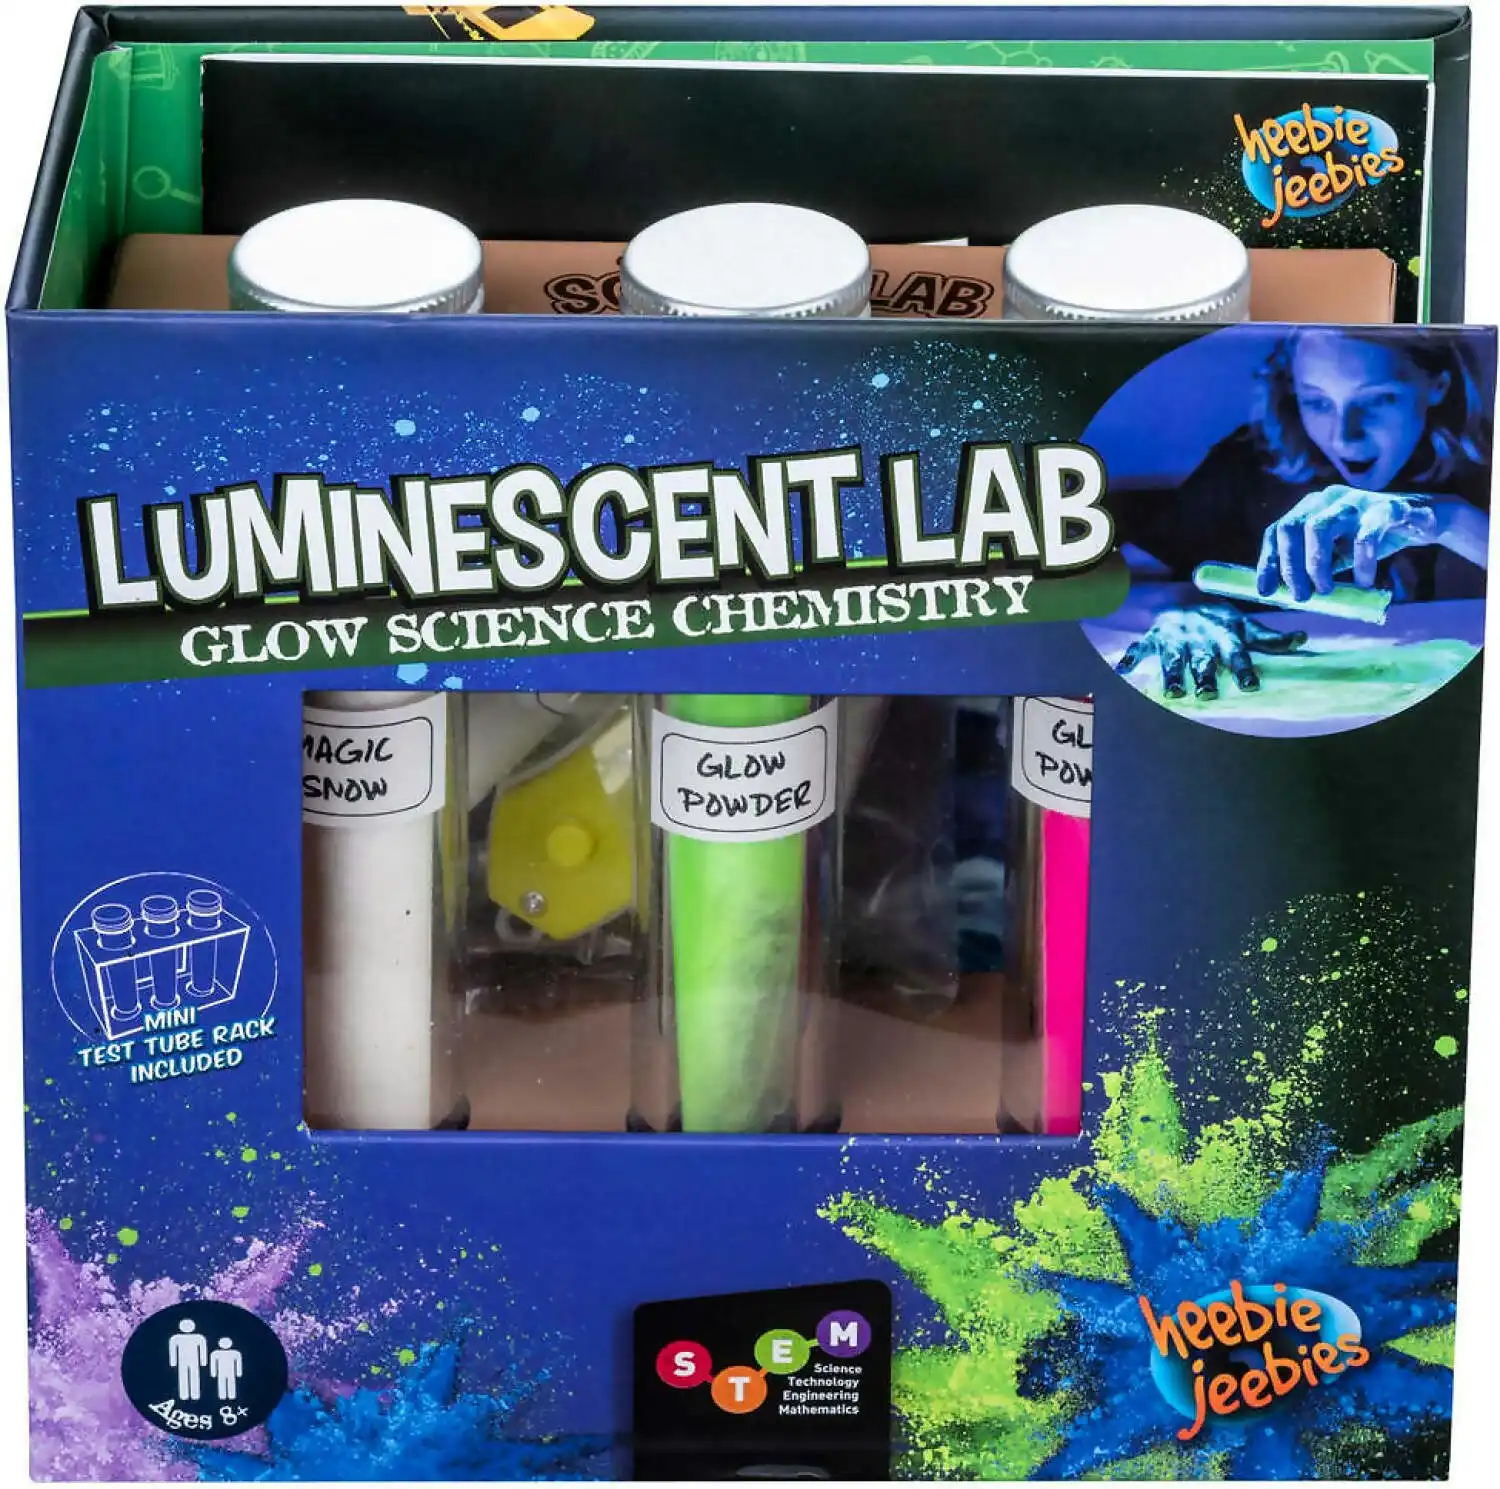 Heebie Jeebies - Luminescent Lab Chemistry